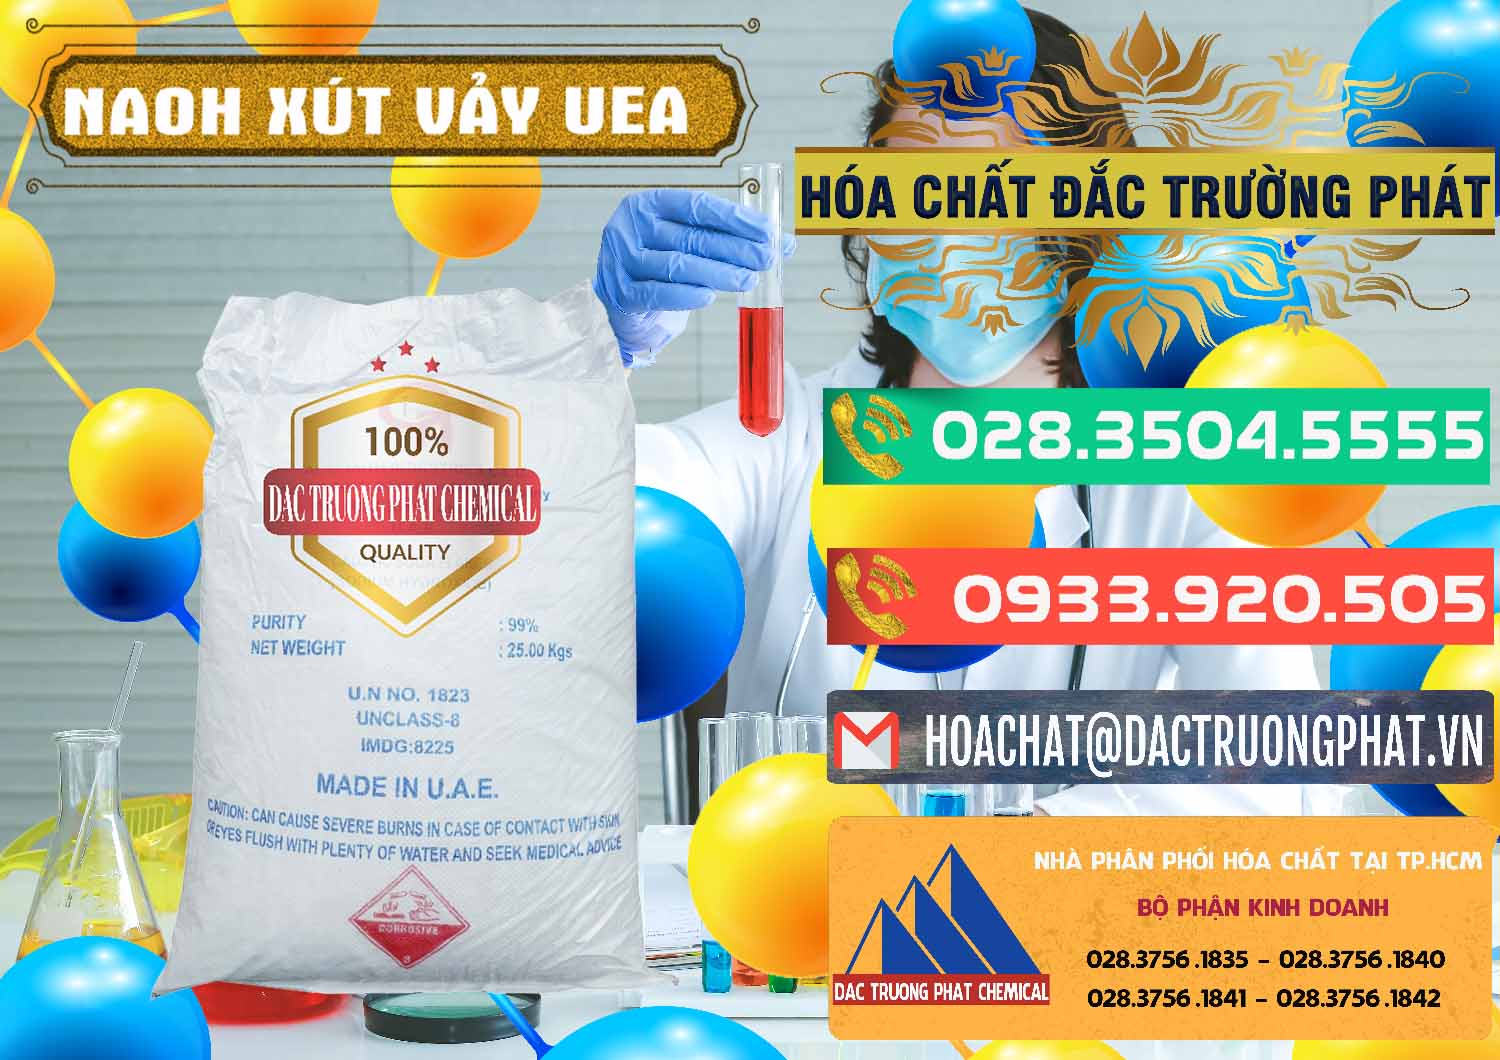 Chuyên phân phối _ bán Xút Vảy - NaOH Vảy UAE Iran - 0432 - Kinh doanh _ cung cấp hóa chất tại TP.HCM - congtyhoachat.com.vn